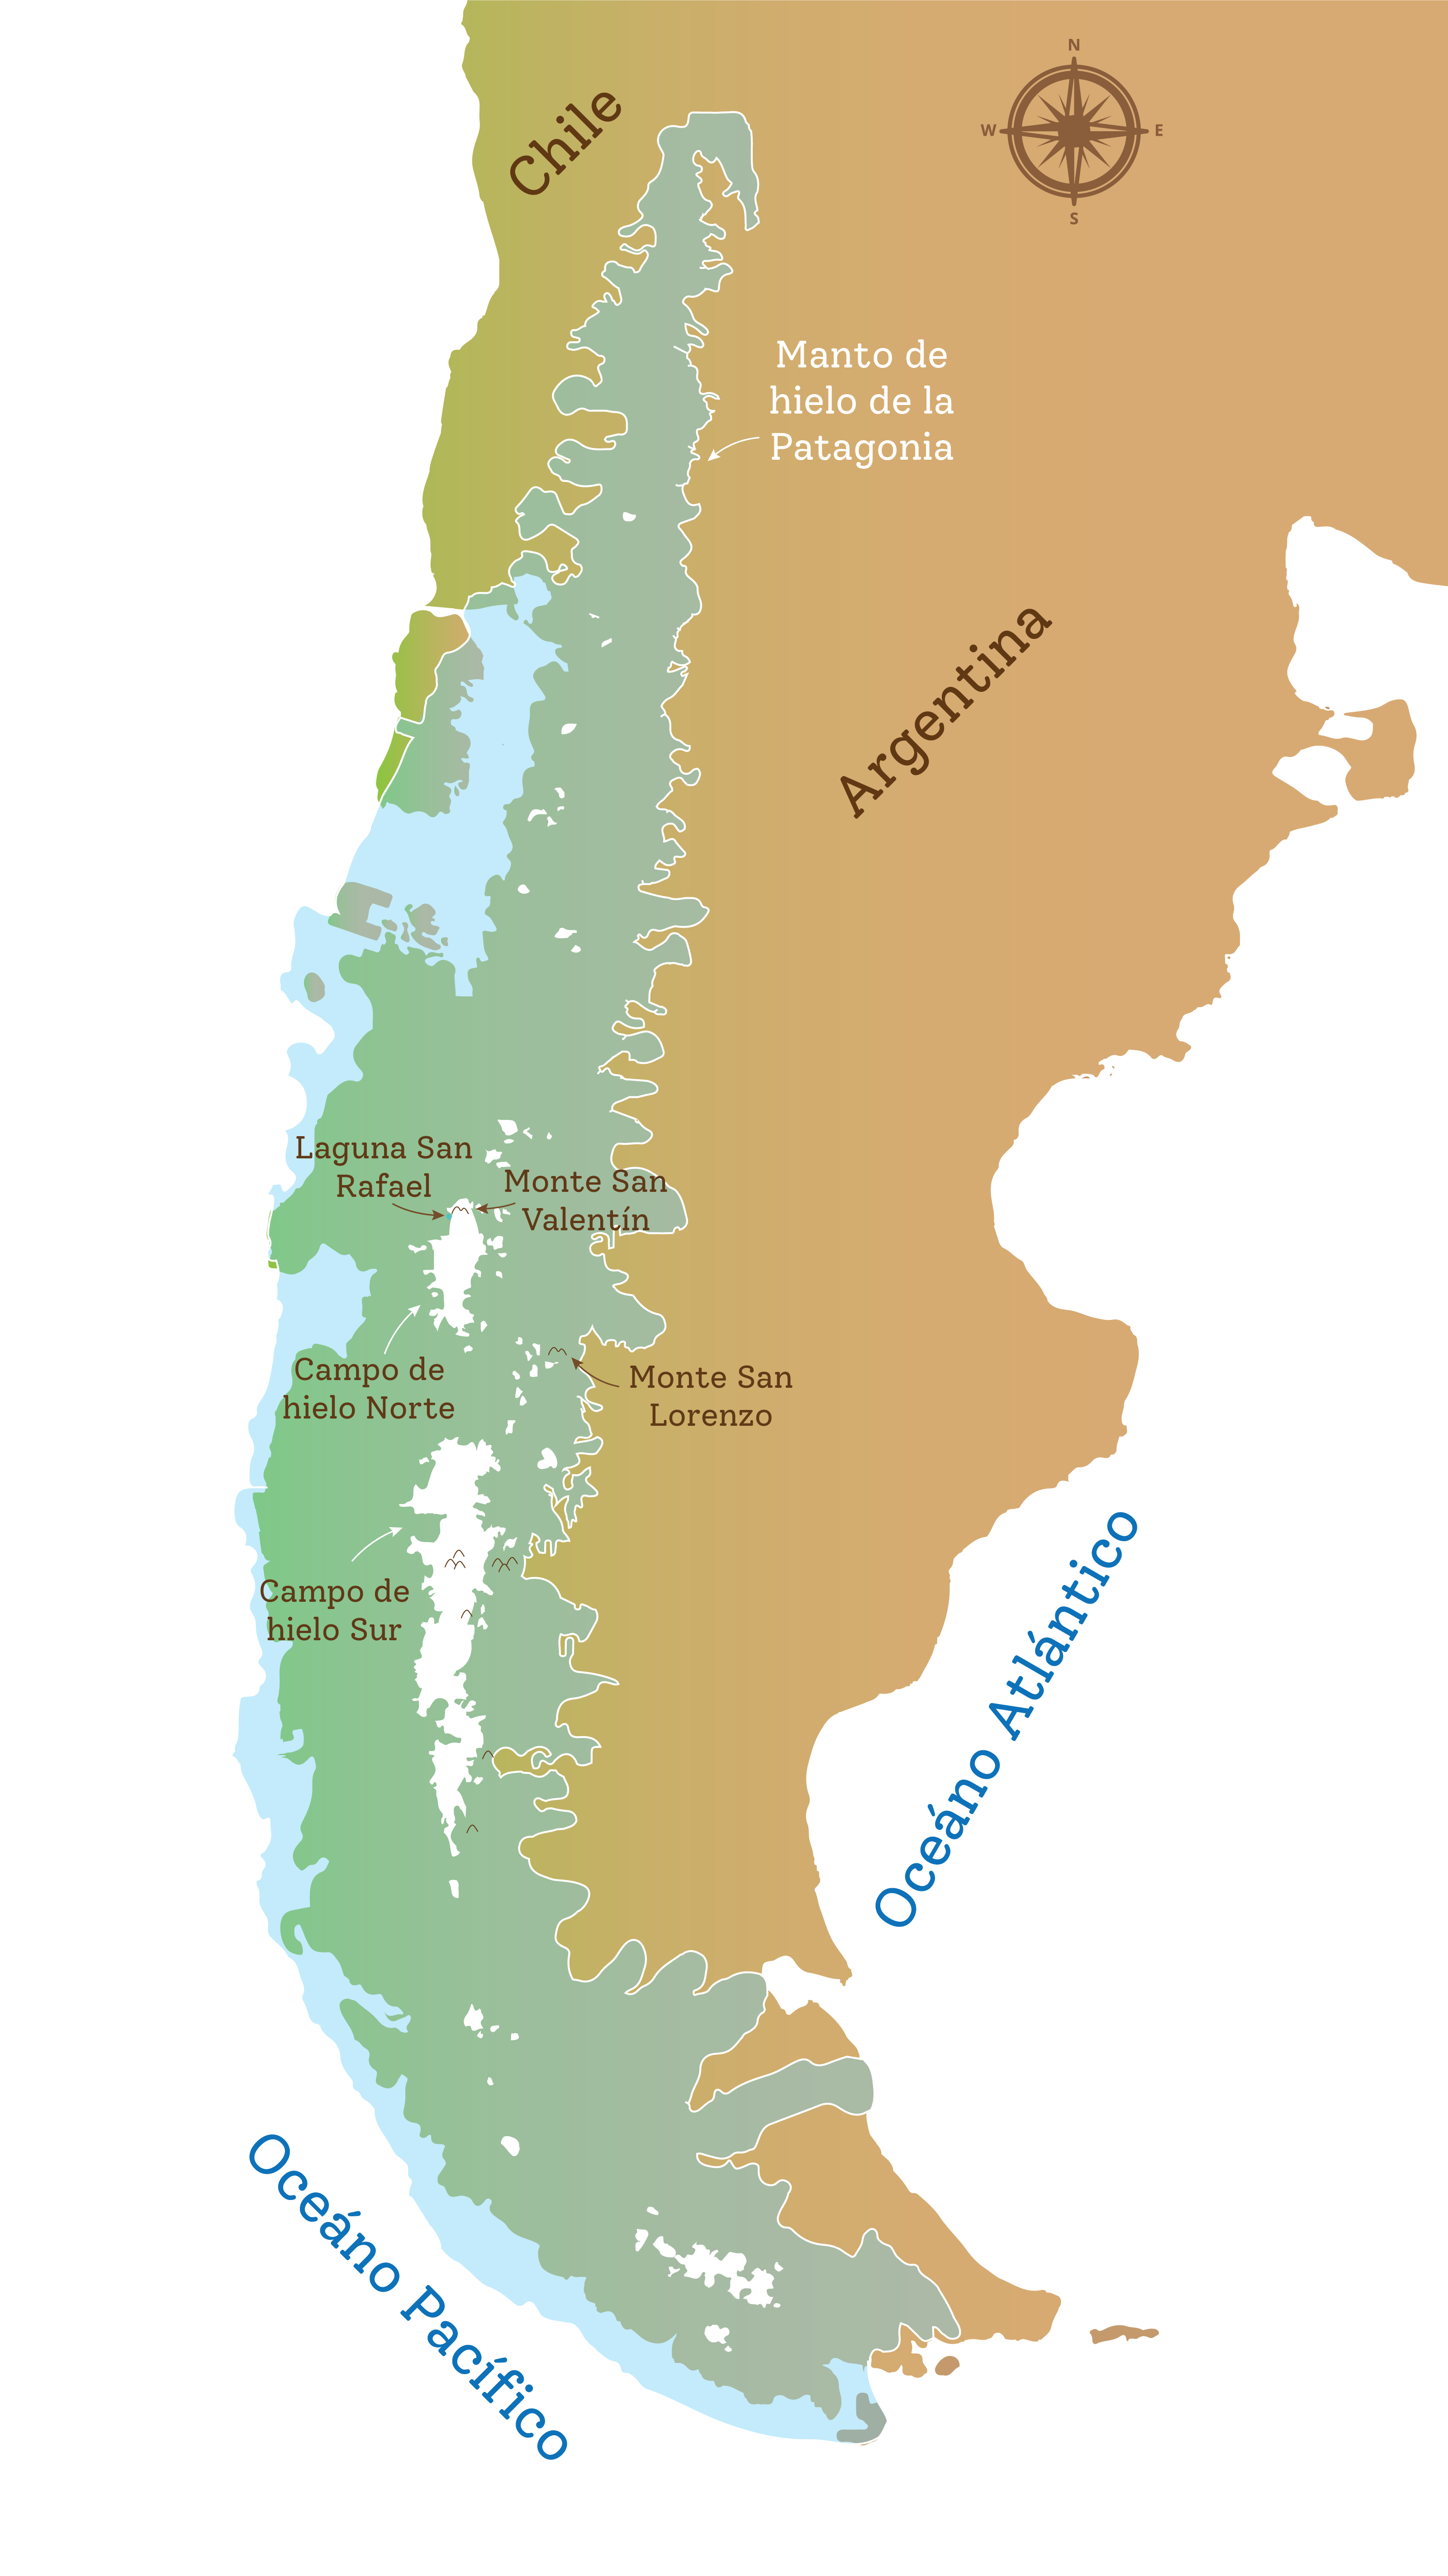 Mapa de Chile y Argentina con la ubicación de los montes